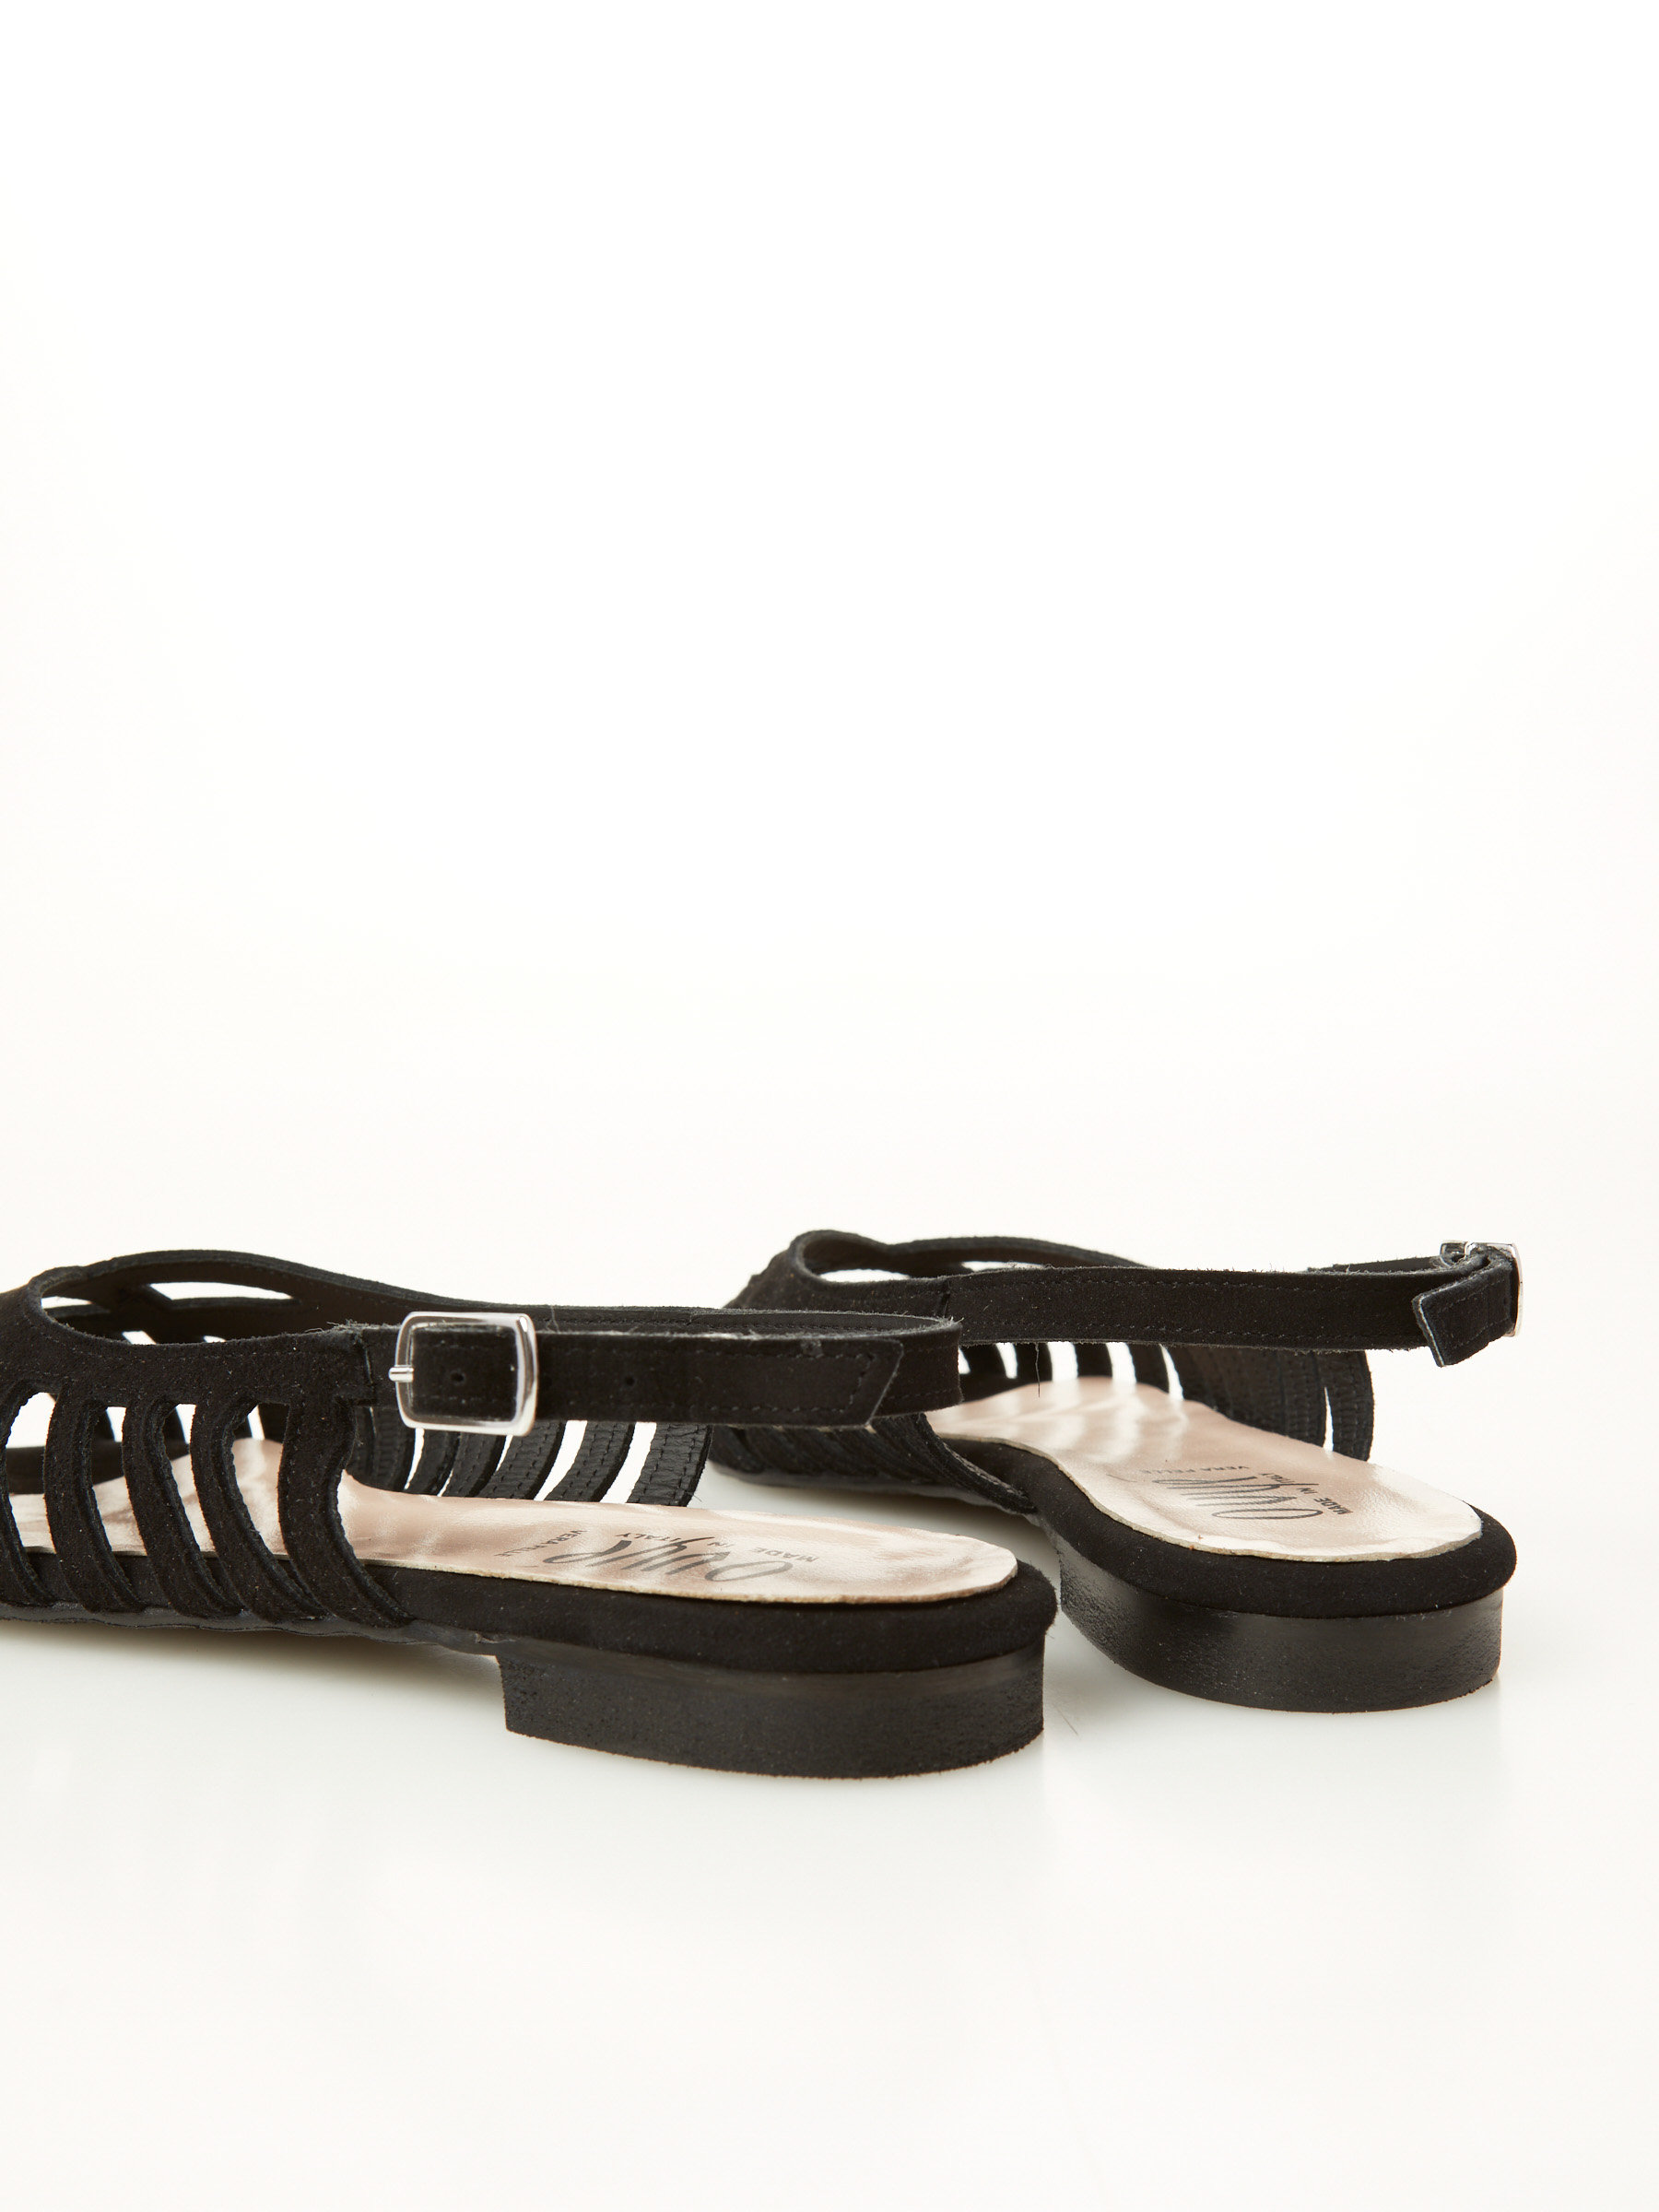 85% Codice Sconto Suede Spider Sandal F0545554-0554 moda scarpe